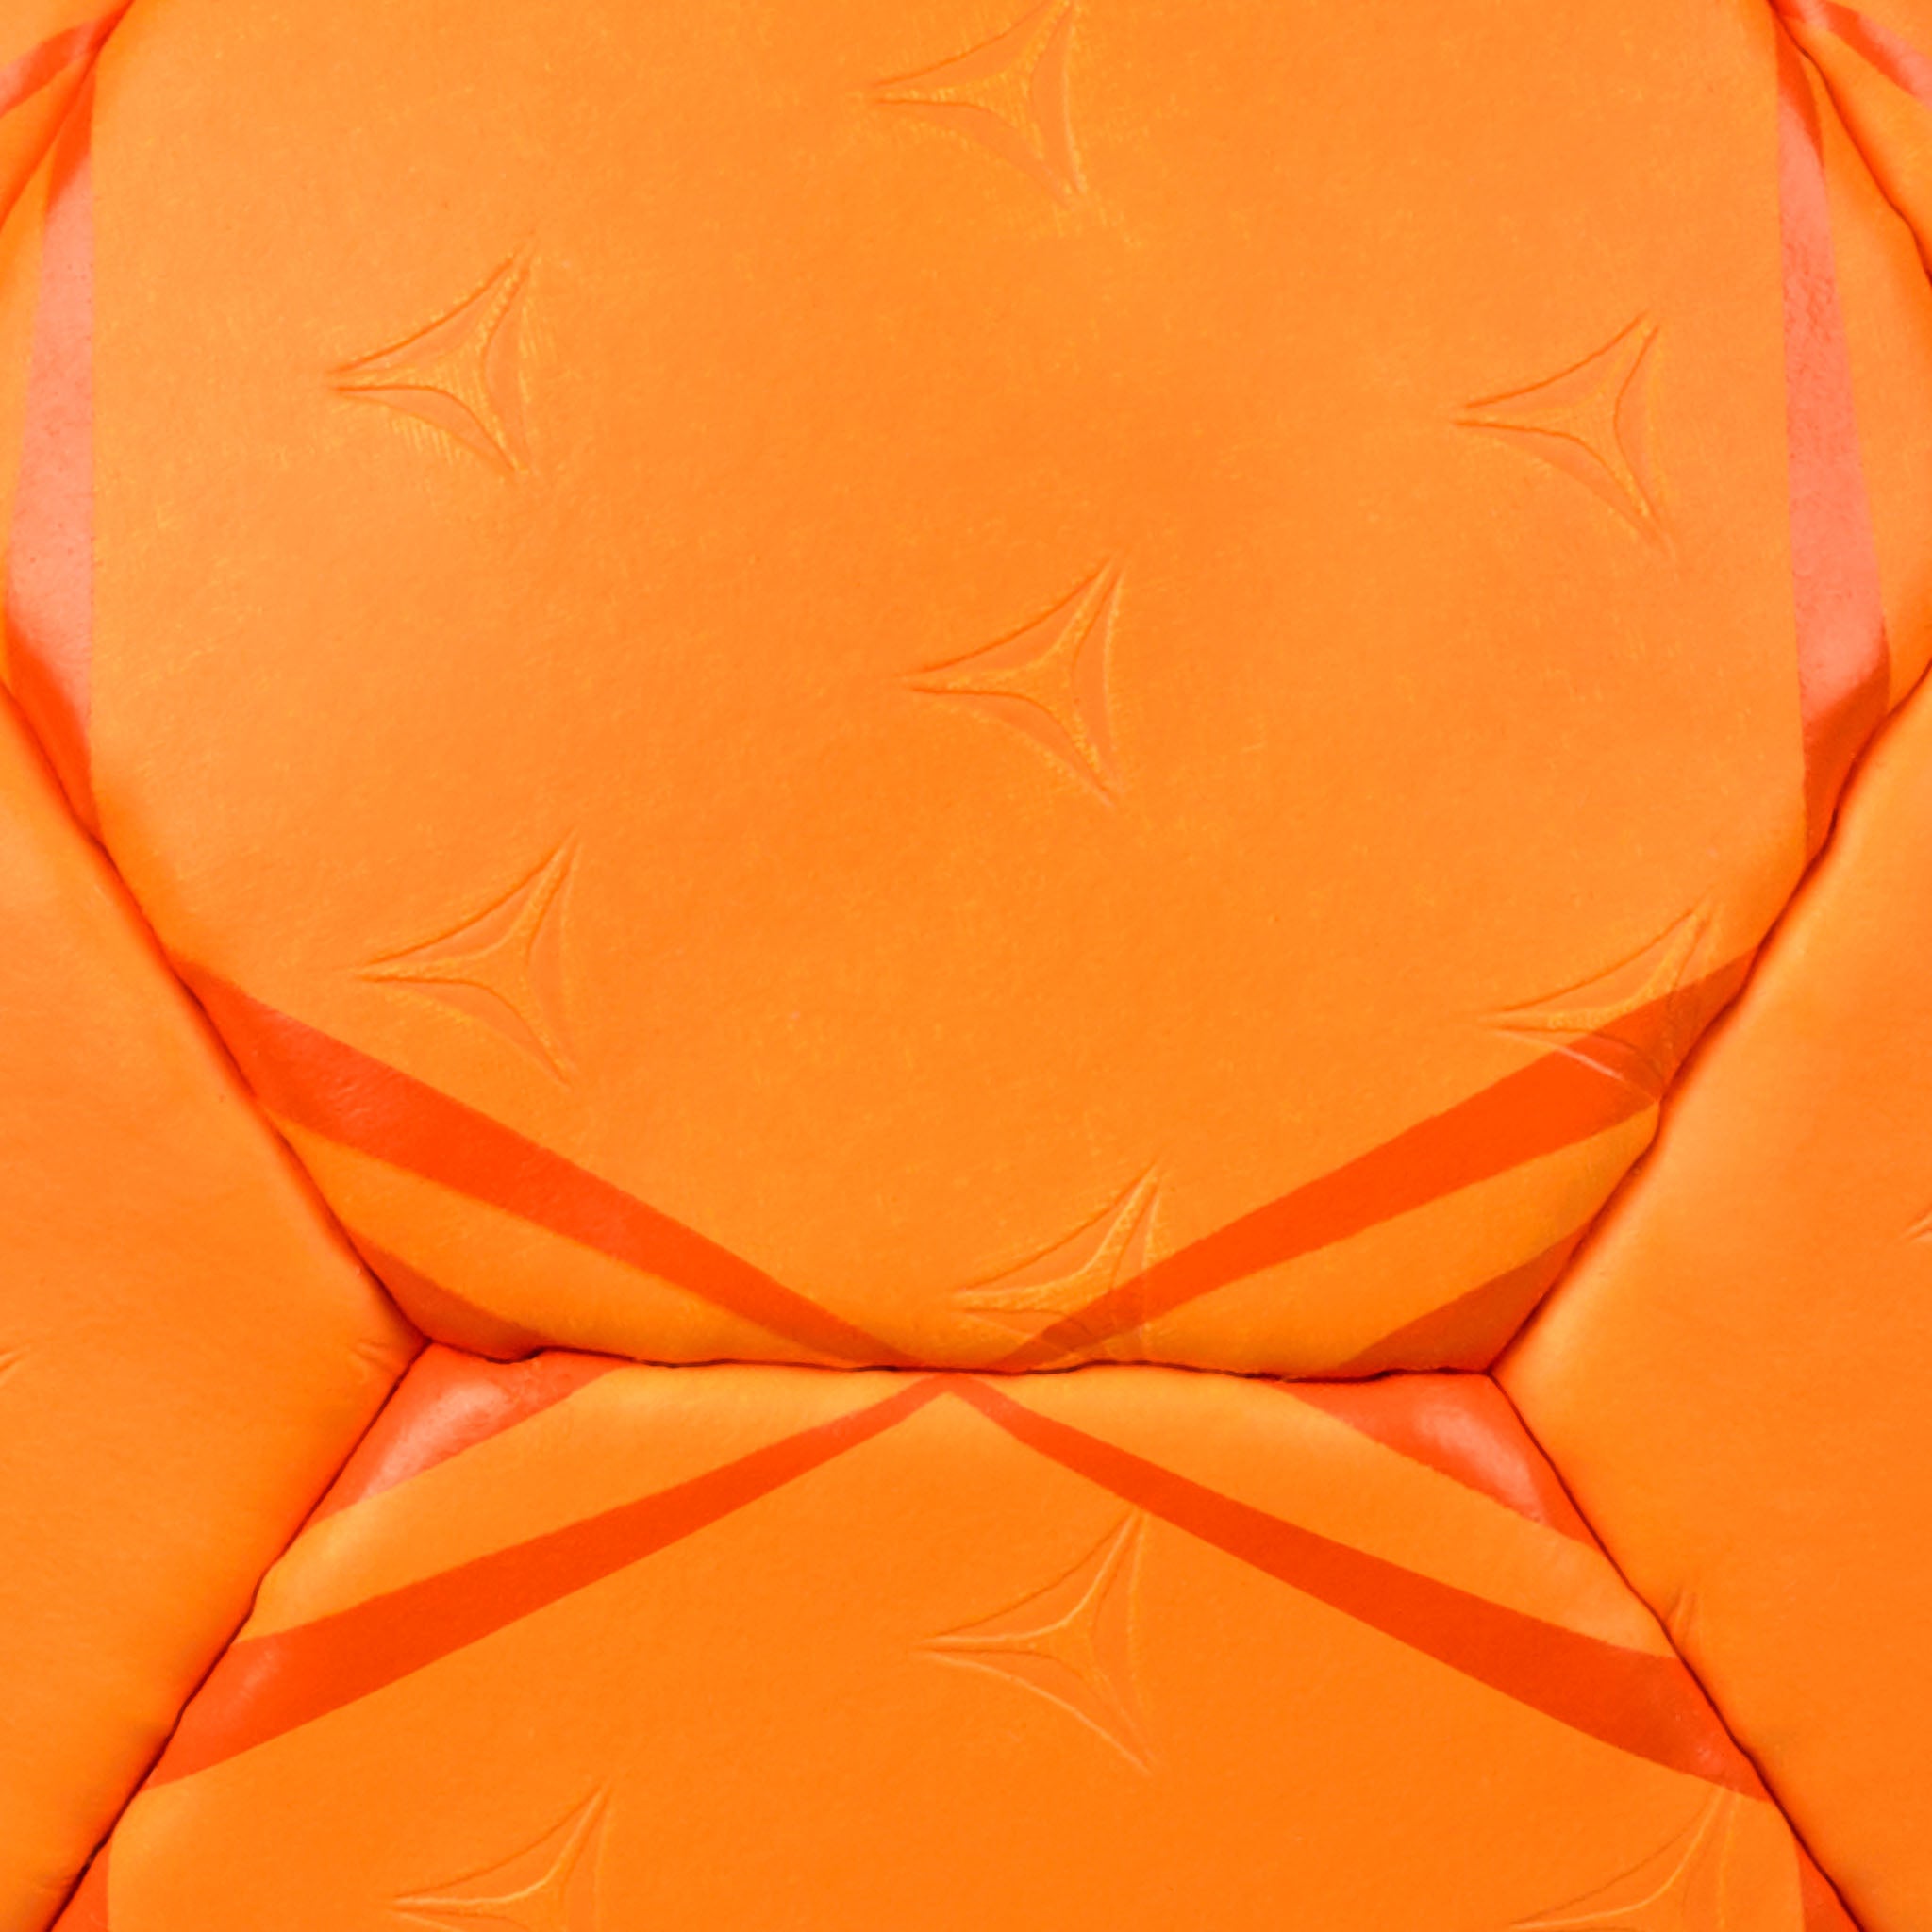 Handboll - Mundo #färg_orange